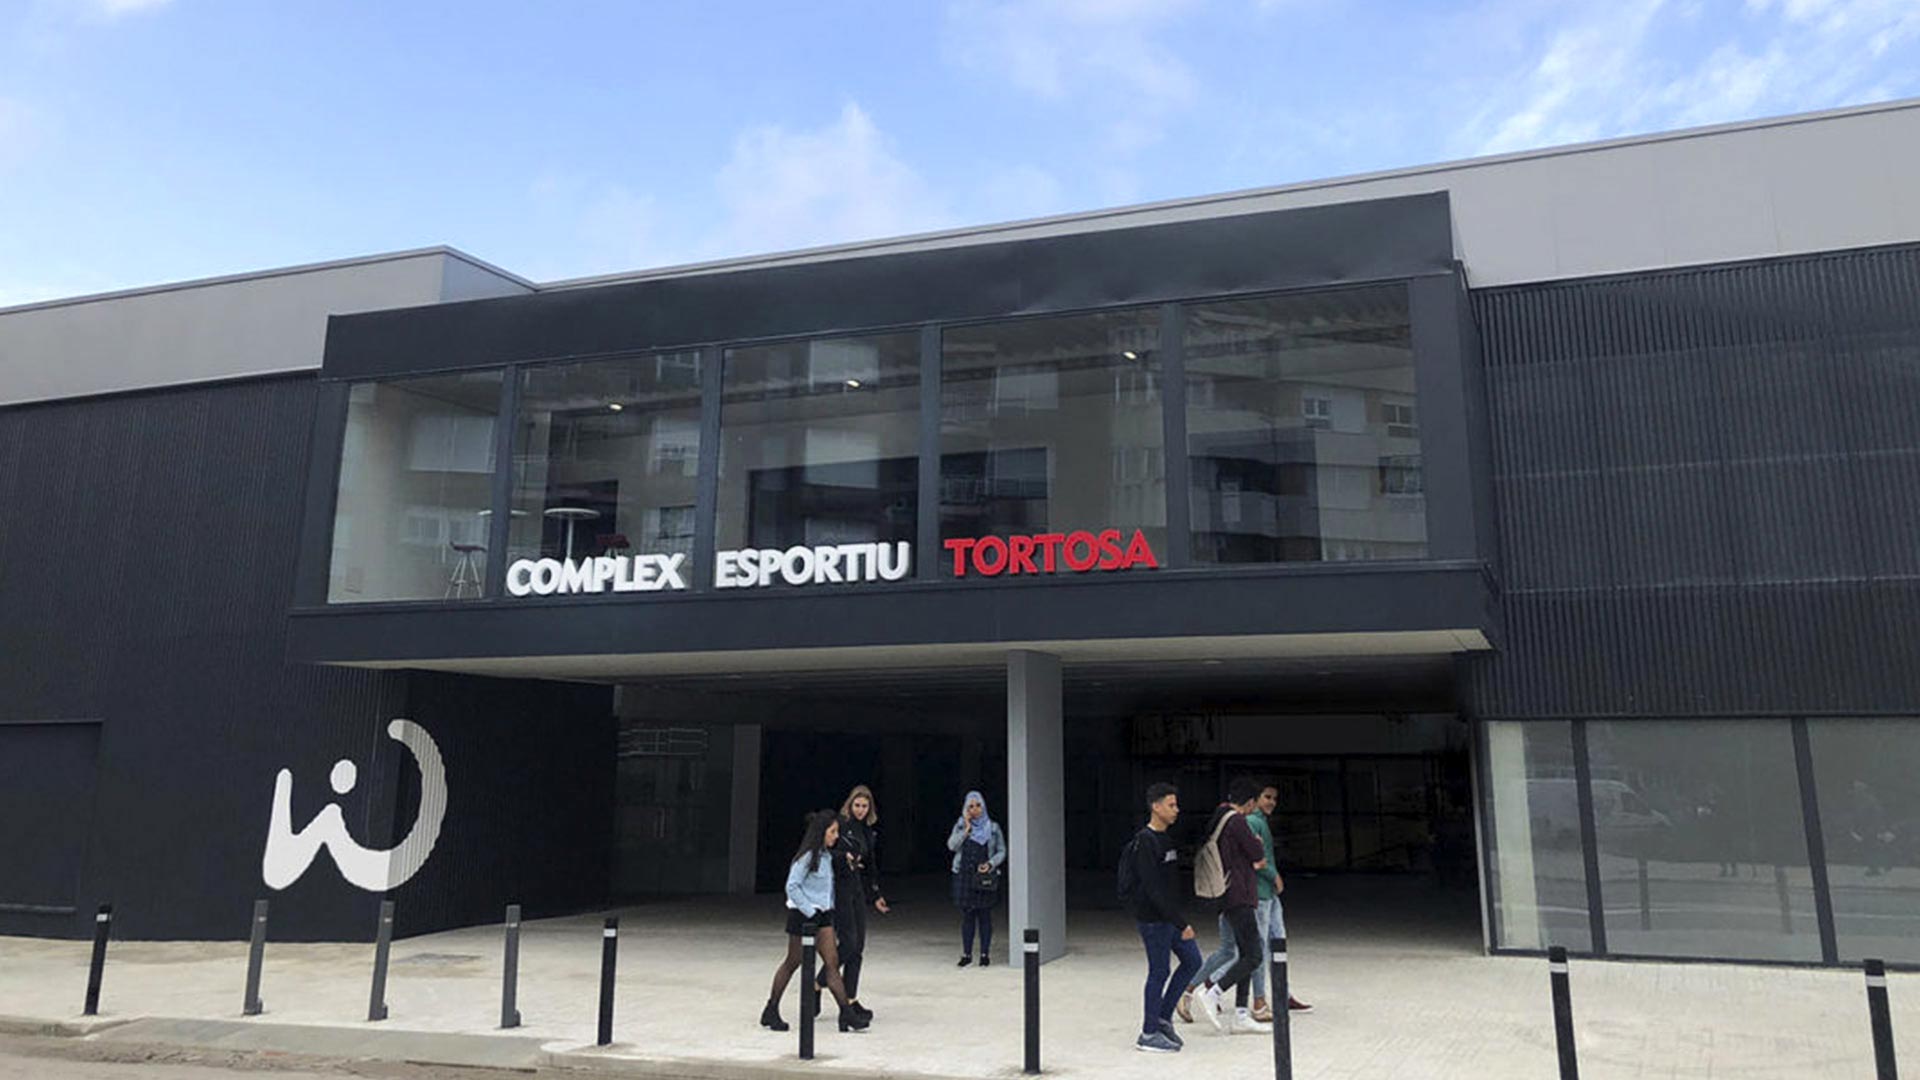 Fachada del complejo deportivo WIN de Tortosa